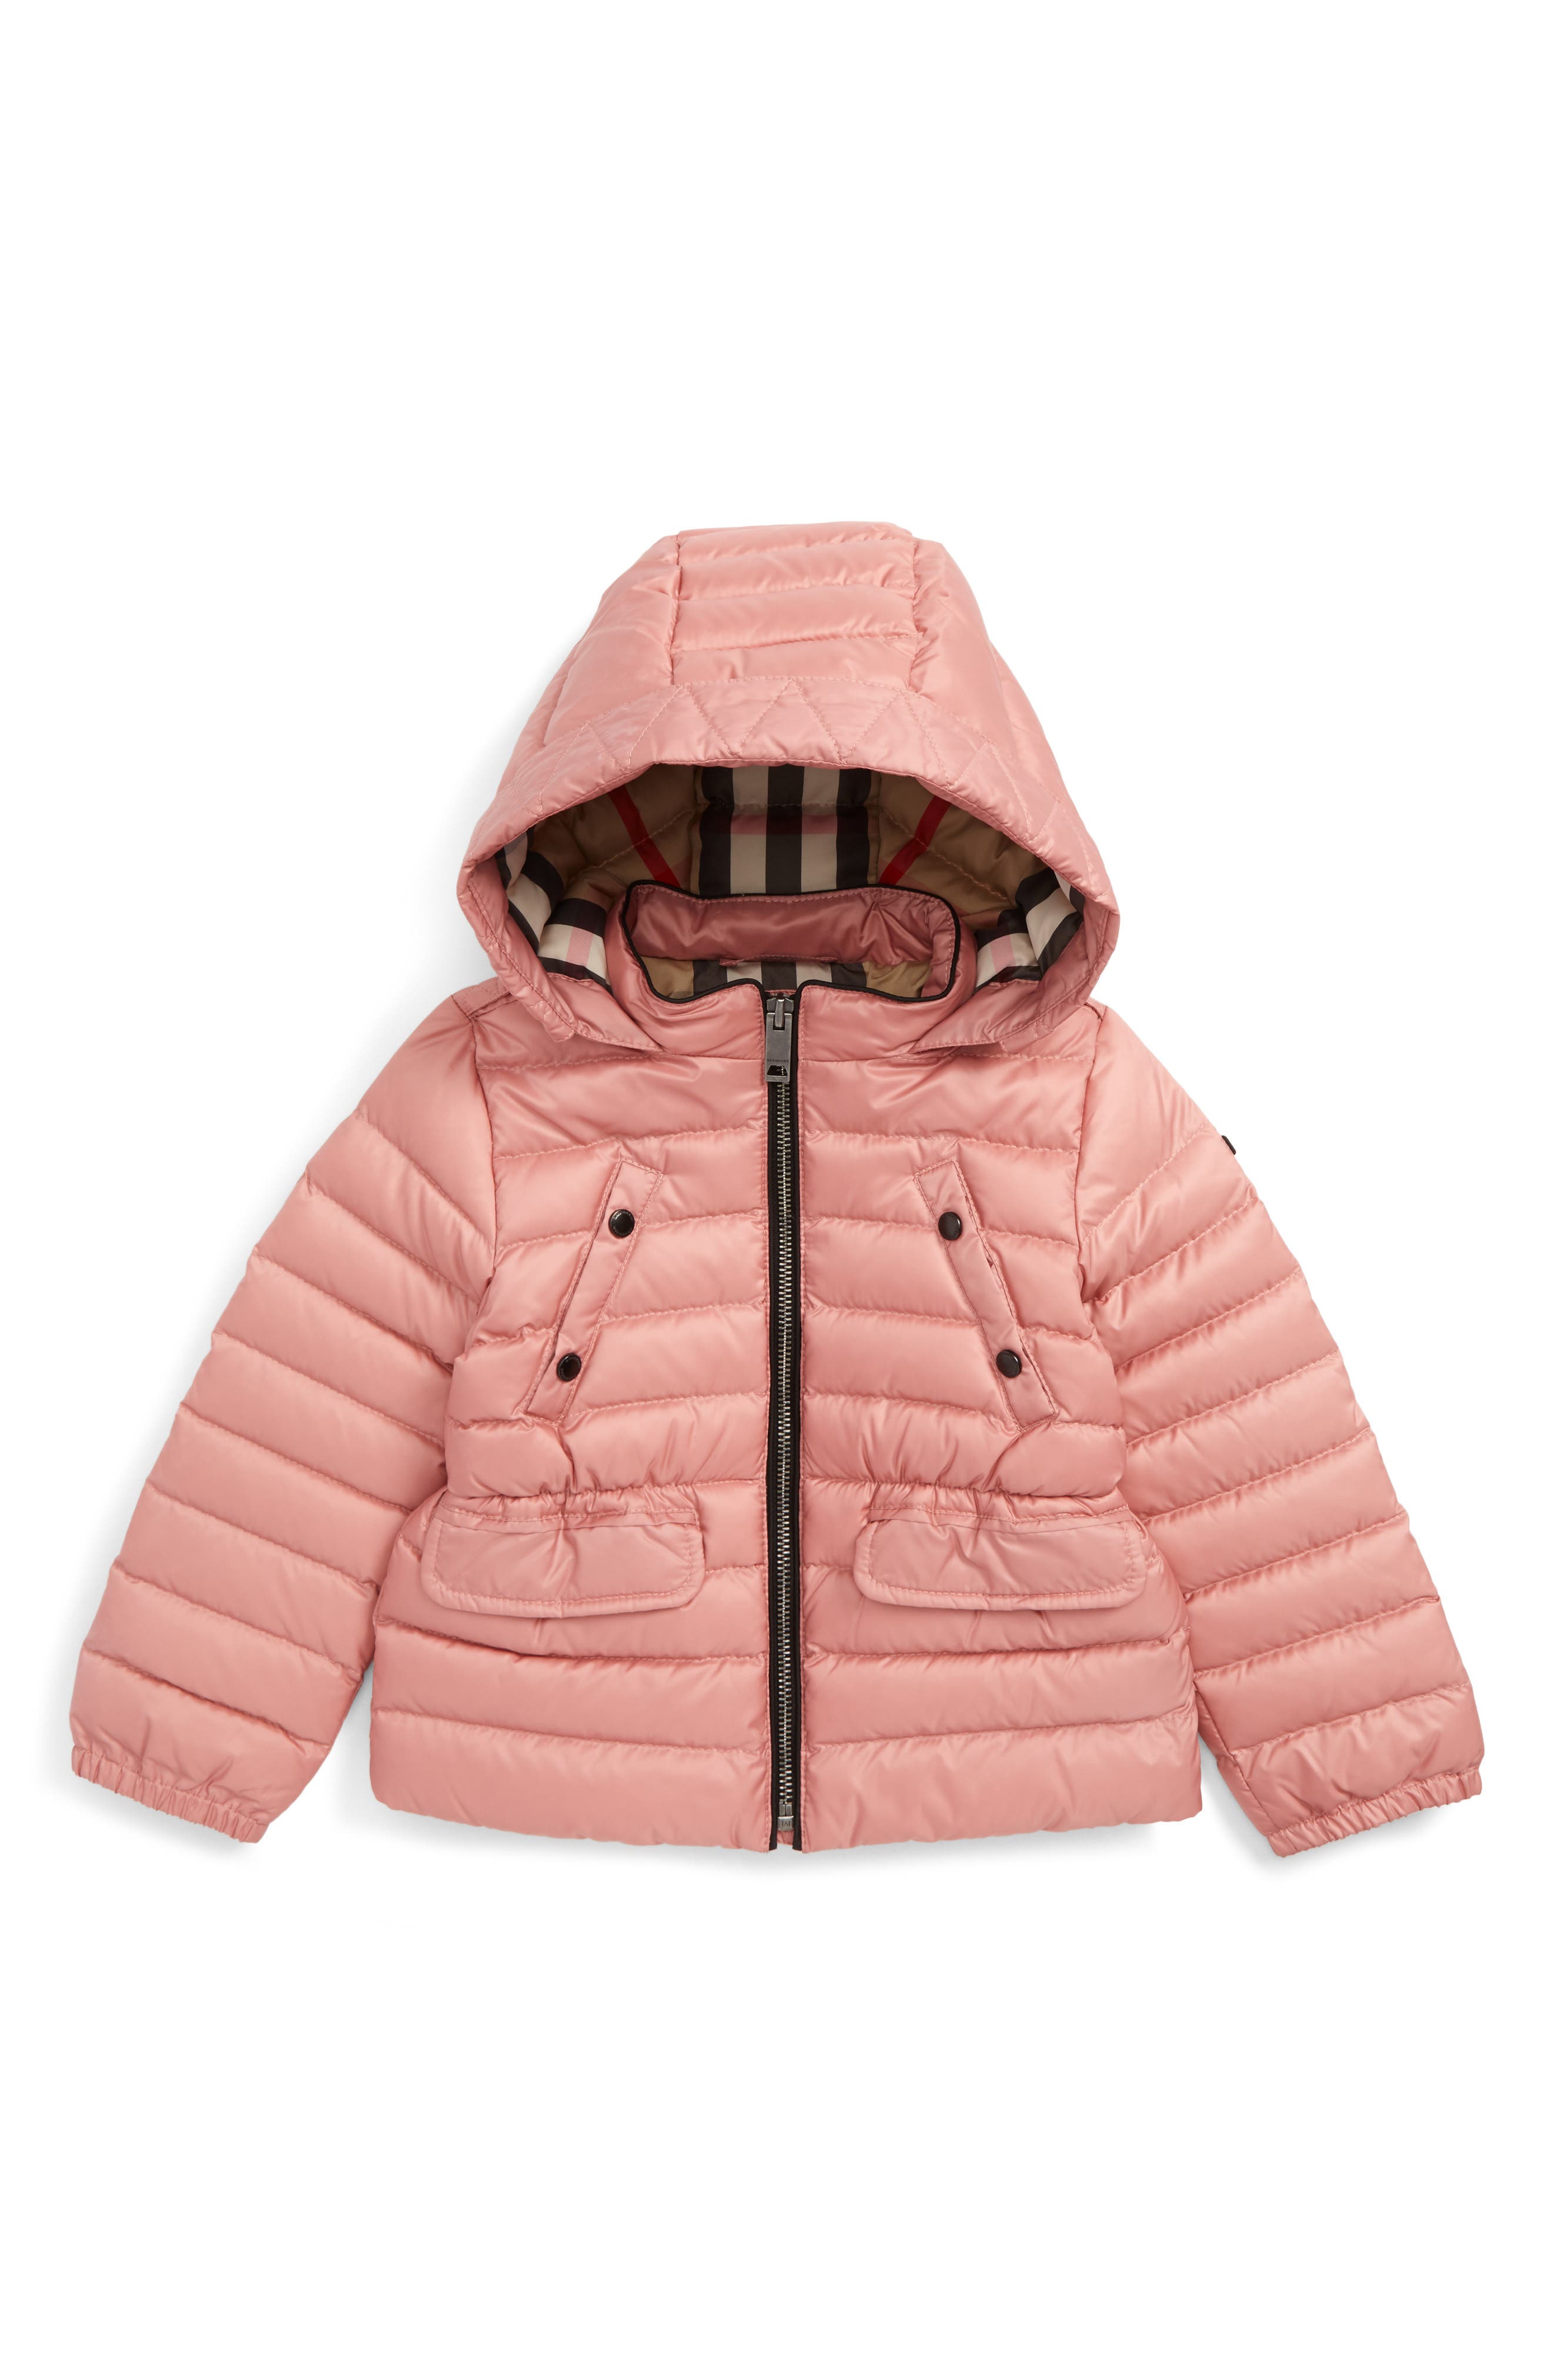 burberry coat for toddler girl